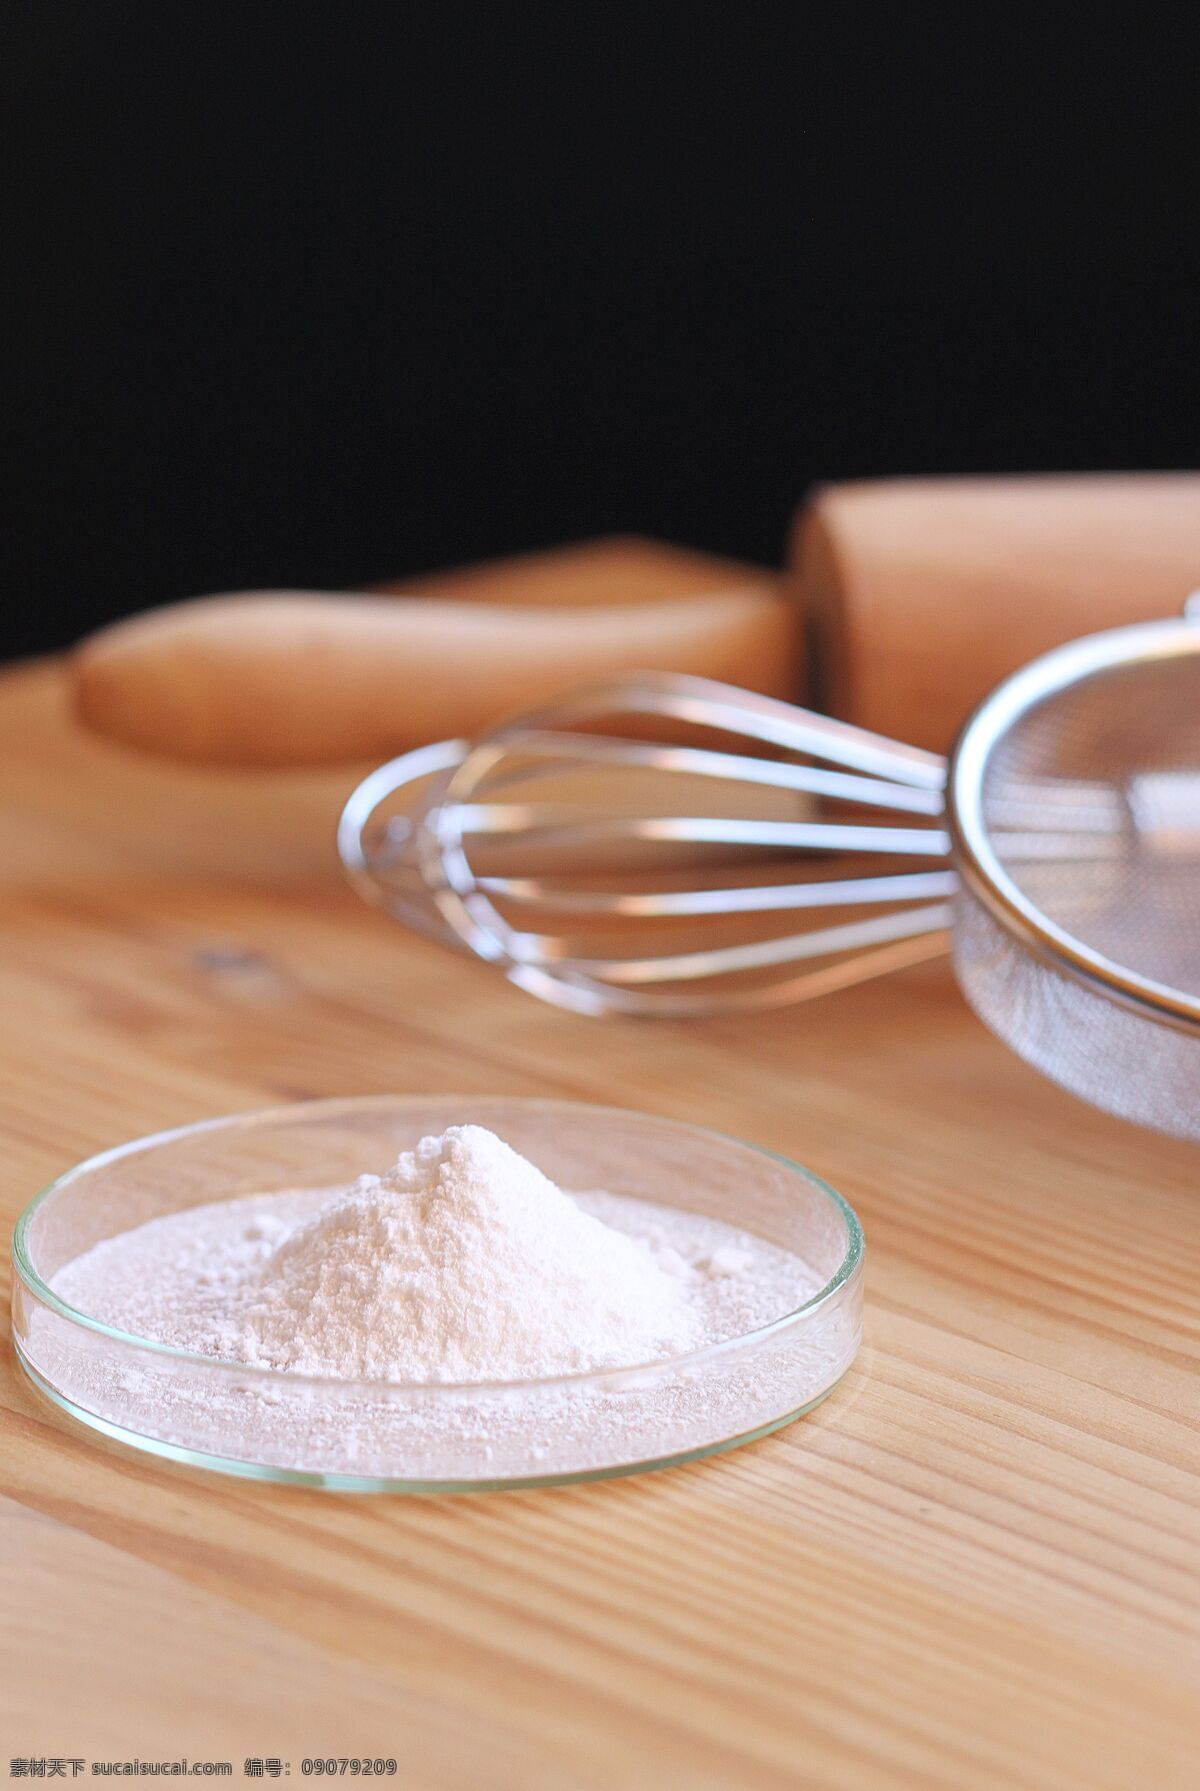 厨具 打蛋器 面粉 擀面杖 生活百科 生活素材